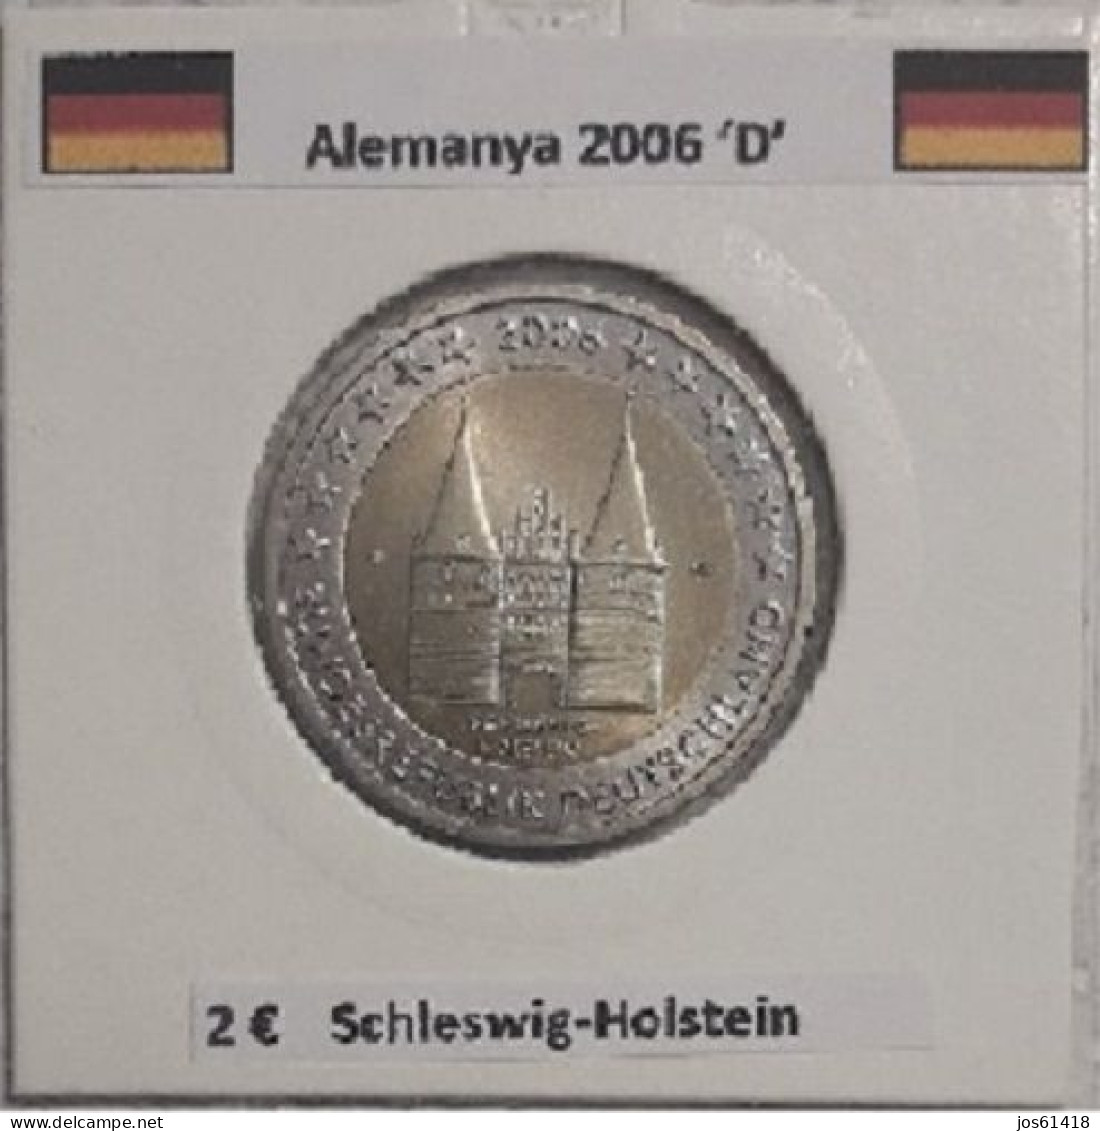 2 Euros Alemania / Germany 2006  Schleswig-Holstein  D Sin Circular - Deutschland